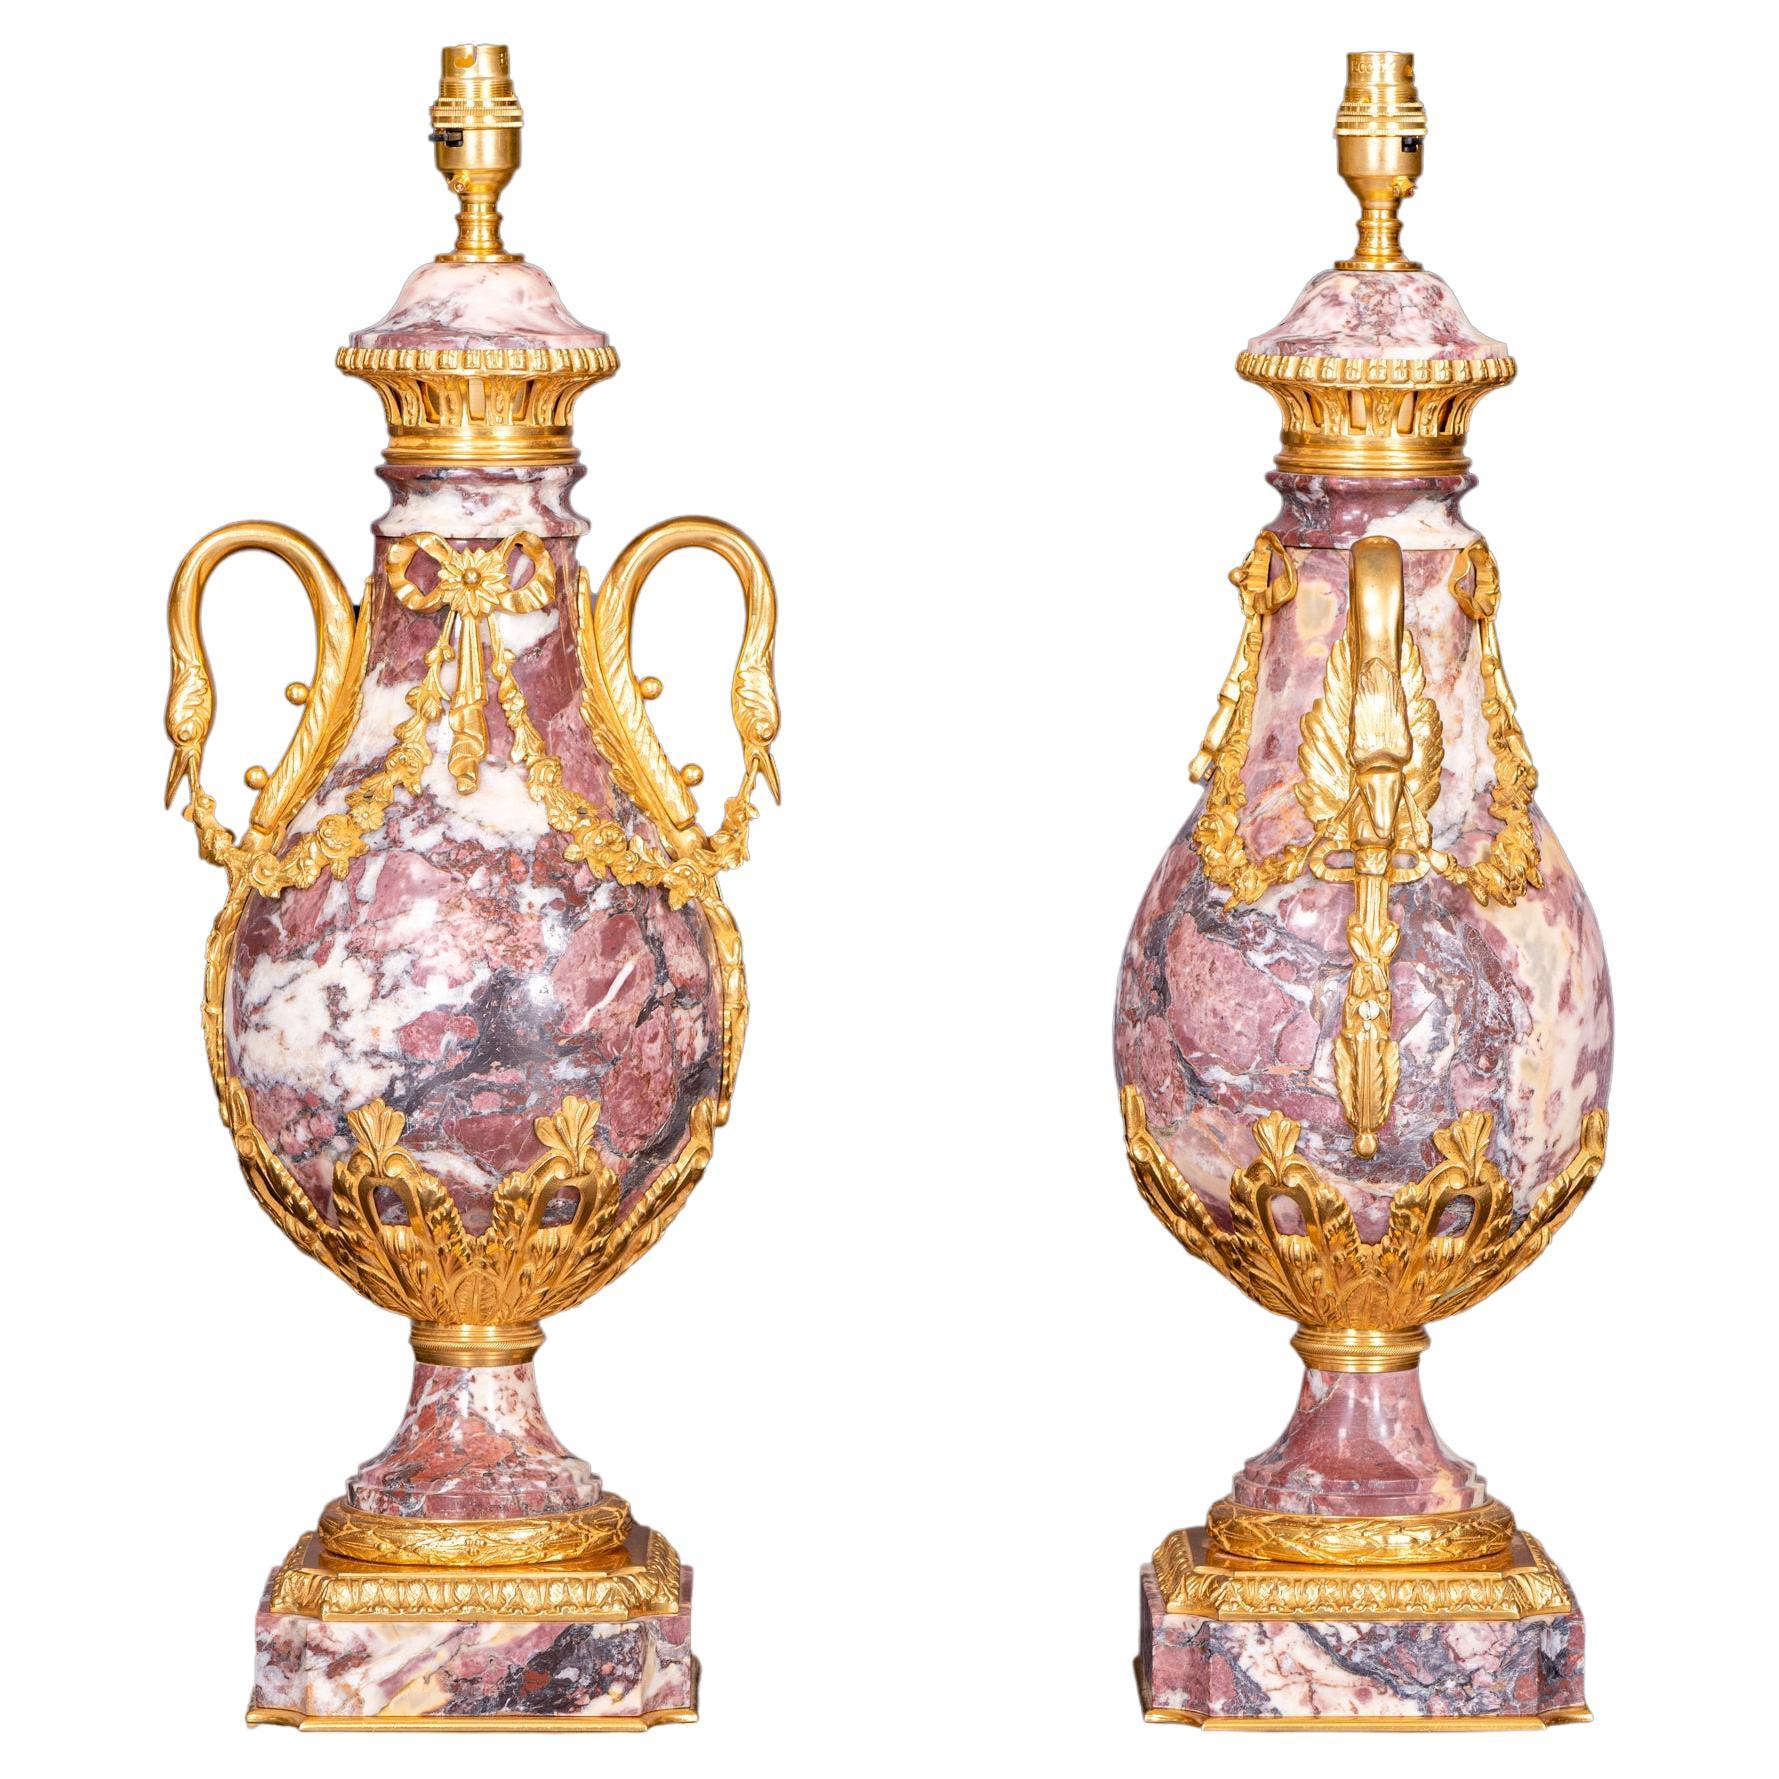 Une superbe paire de lampes de style Louis XVI du 19ème siècle en bronze doré et marbre Brèche Violette. Chaque lampe est surélevée par une élégante base carrée avec des coins concaves et une bande enveloppante Cœur de Rai finement tachetée sous la